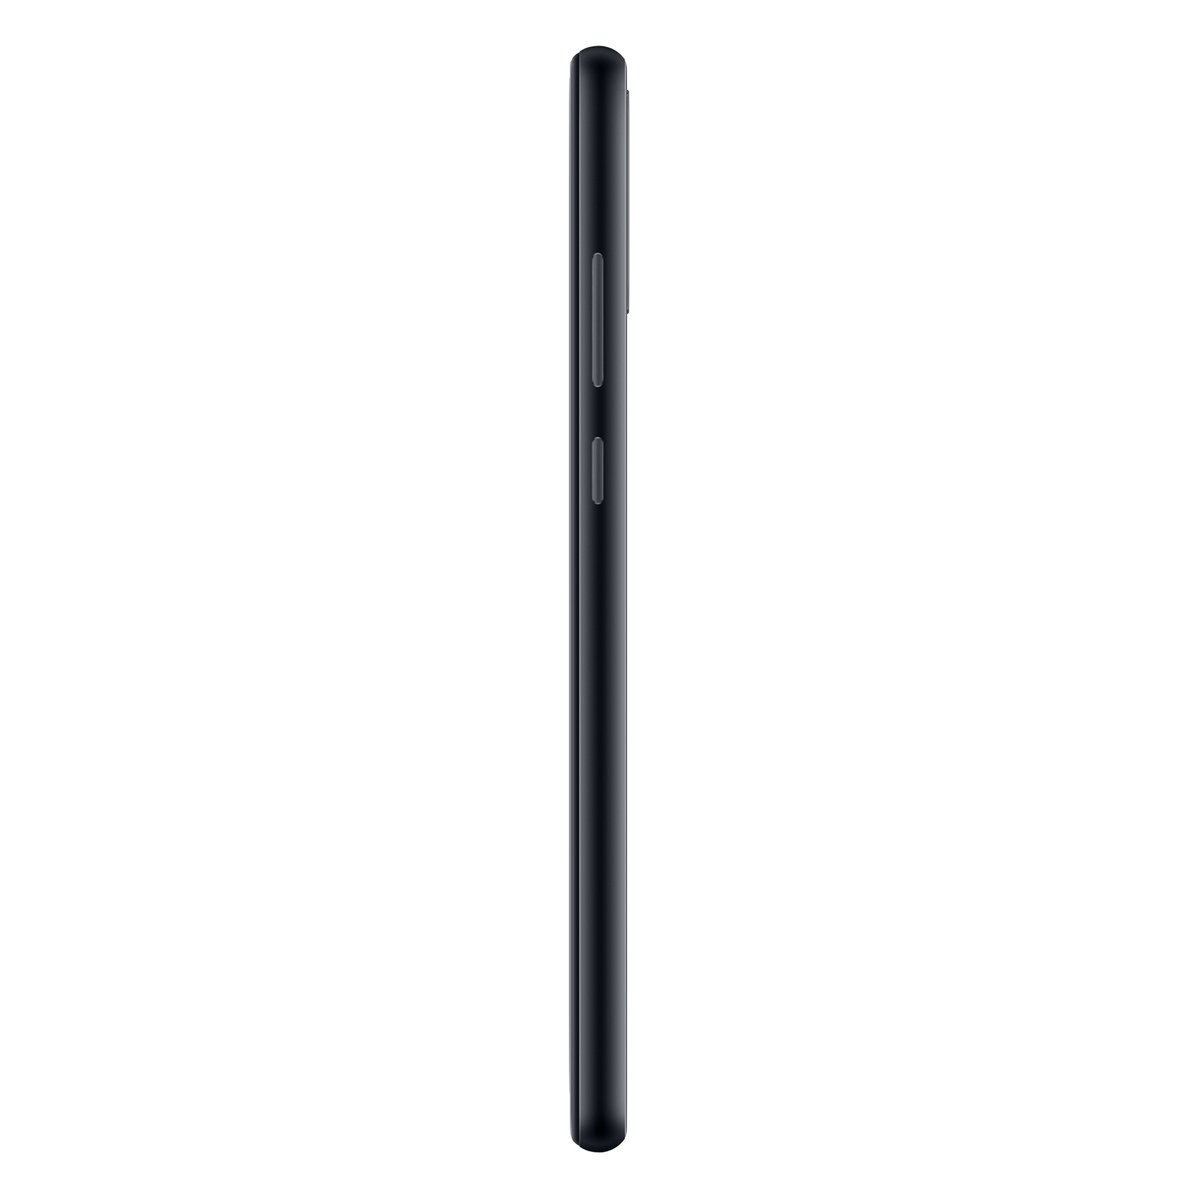 Huawei Y6p 64GB Midnight Black